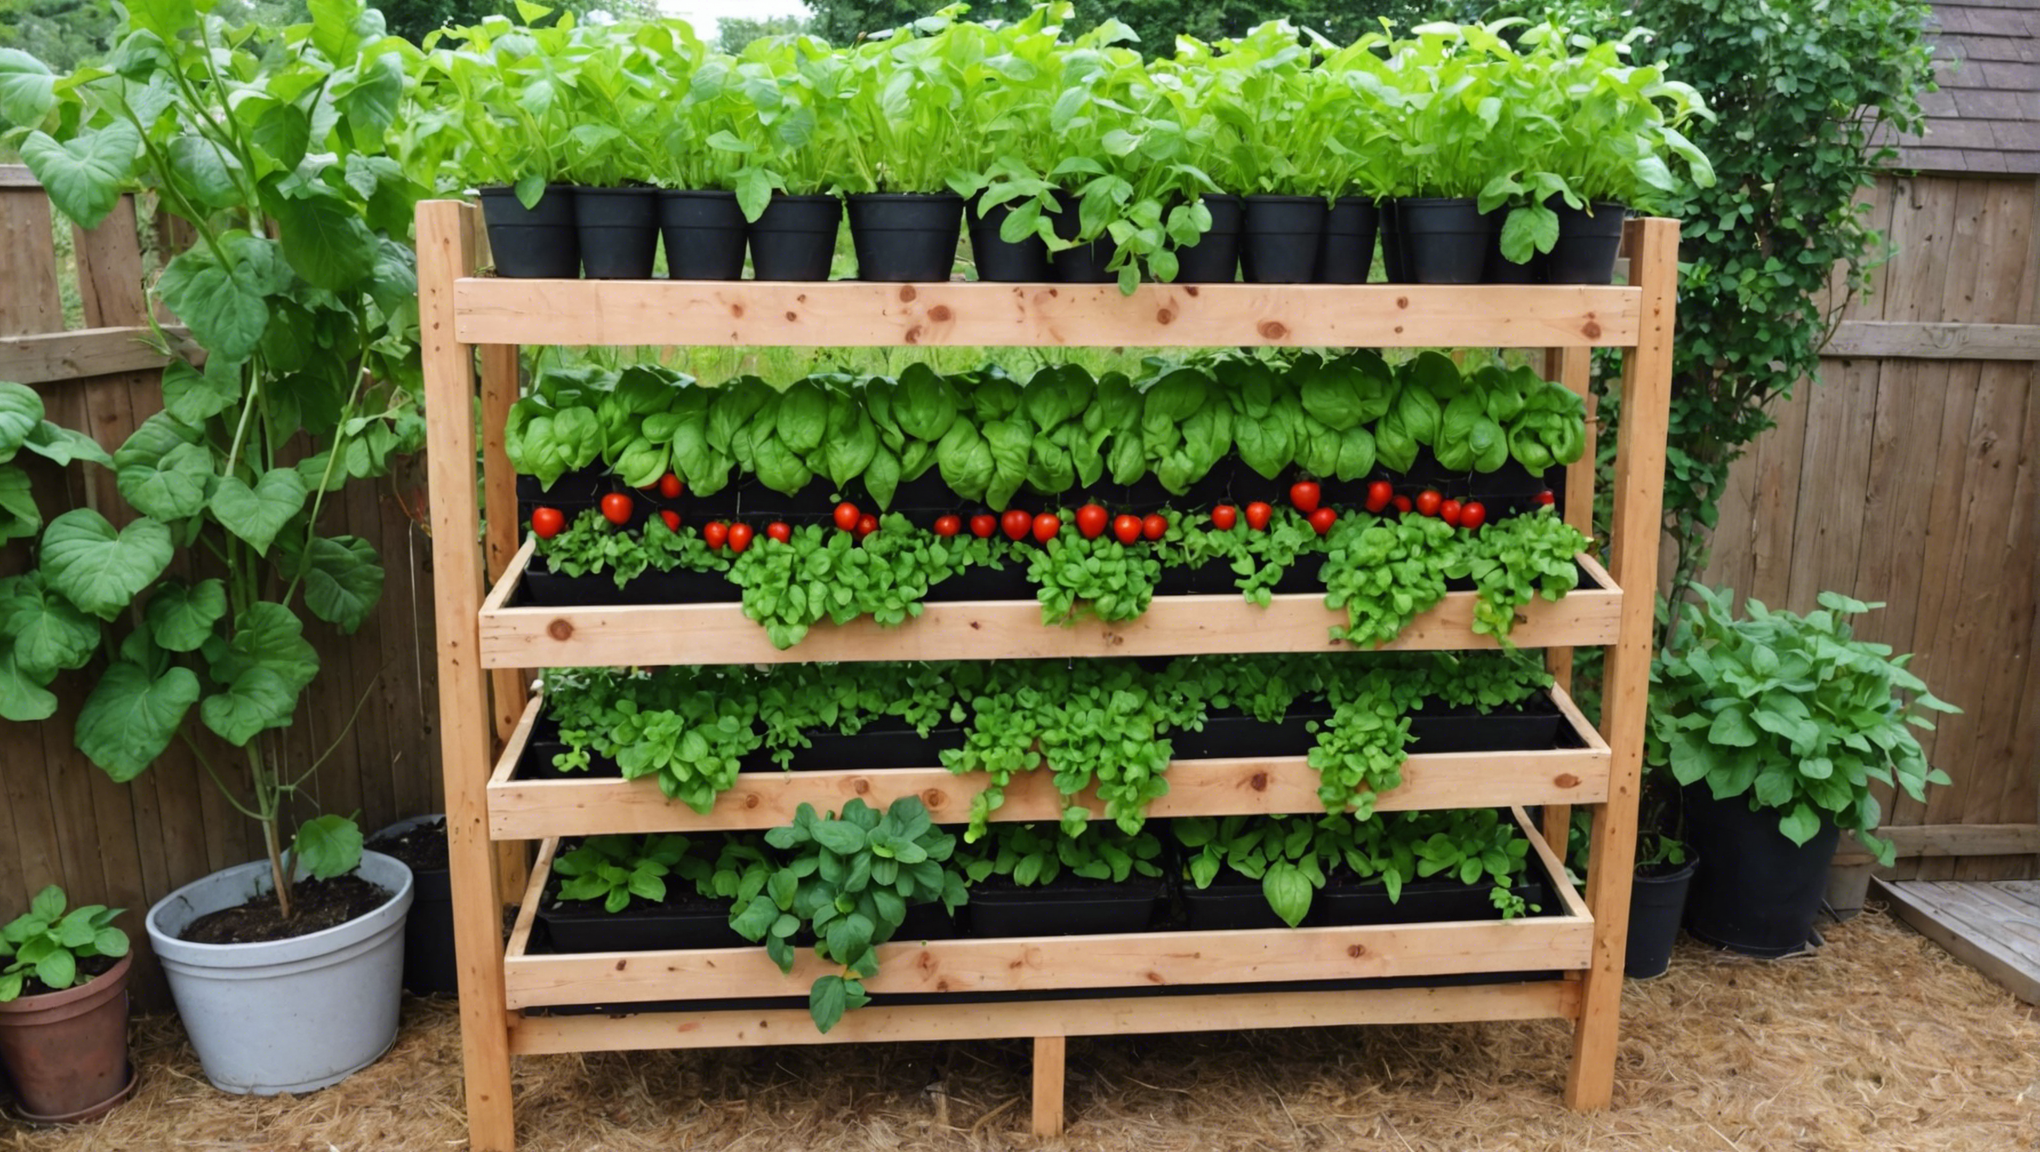 découvrez comment créer un potager vertical en permaculture et cultiver vos légumes de manière écologique et efficace.